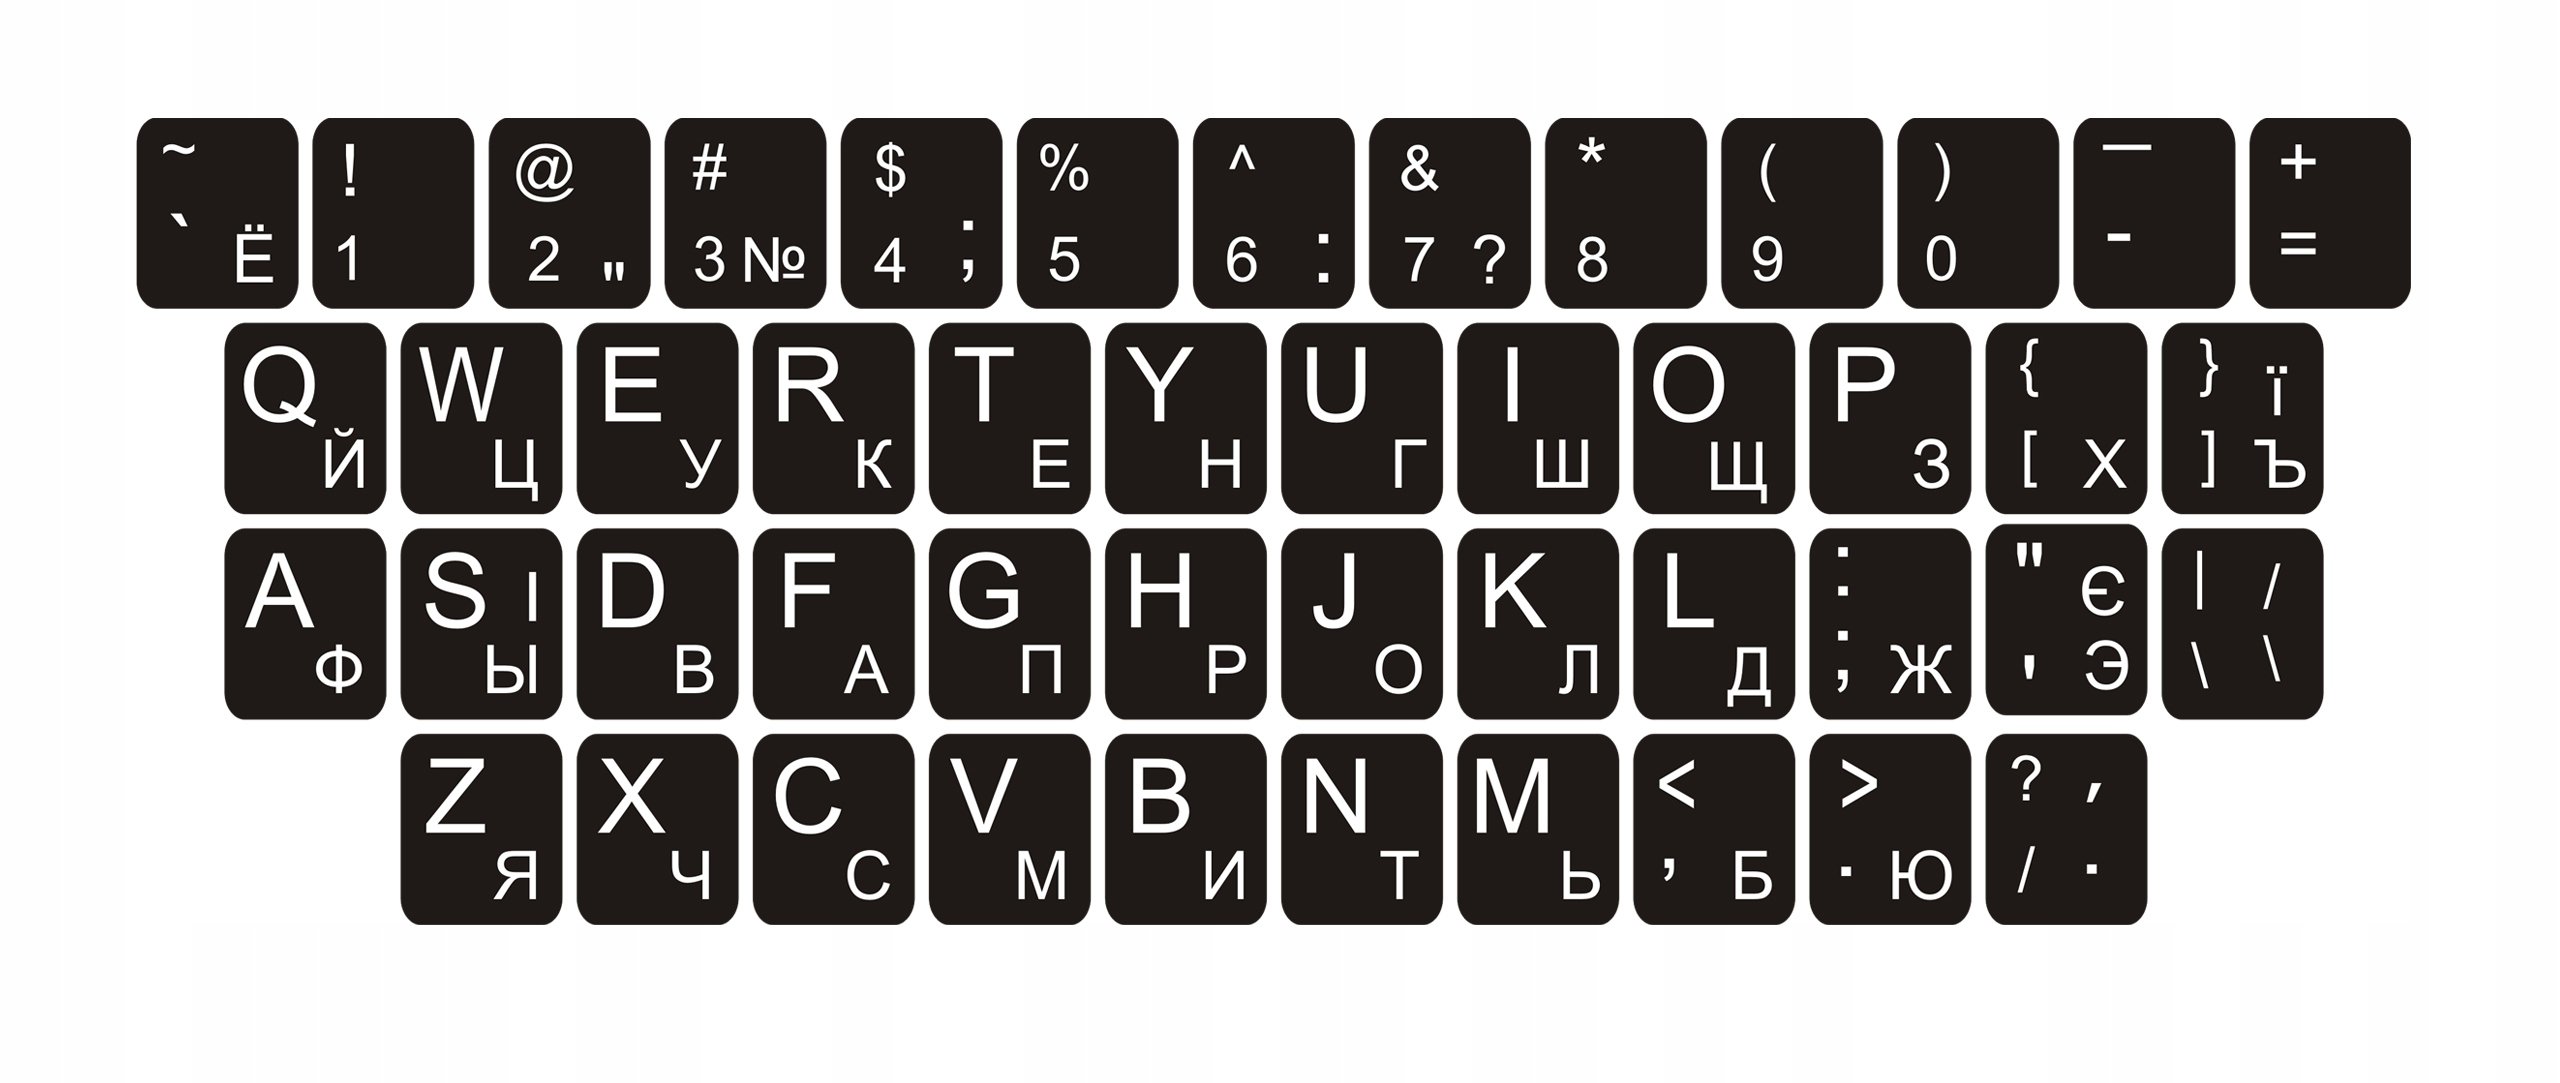 клавиатура компьютера раскладка русская фото